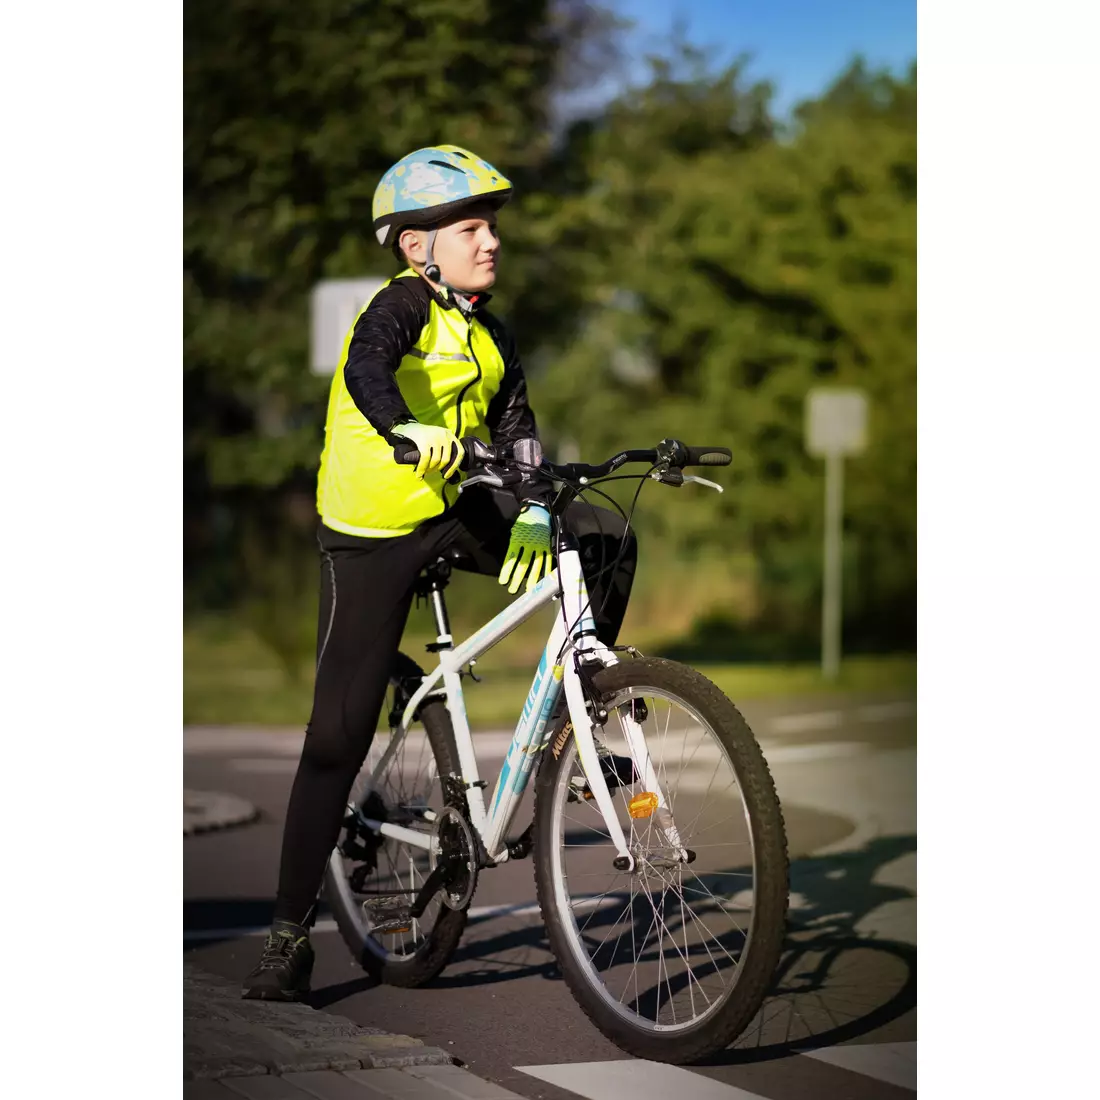 FORCE Fahrradhose für Kinder mit Hosenträgern REFLEX LINE KID, Schwarz 900396